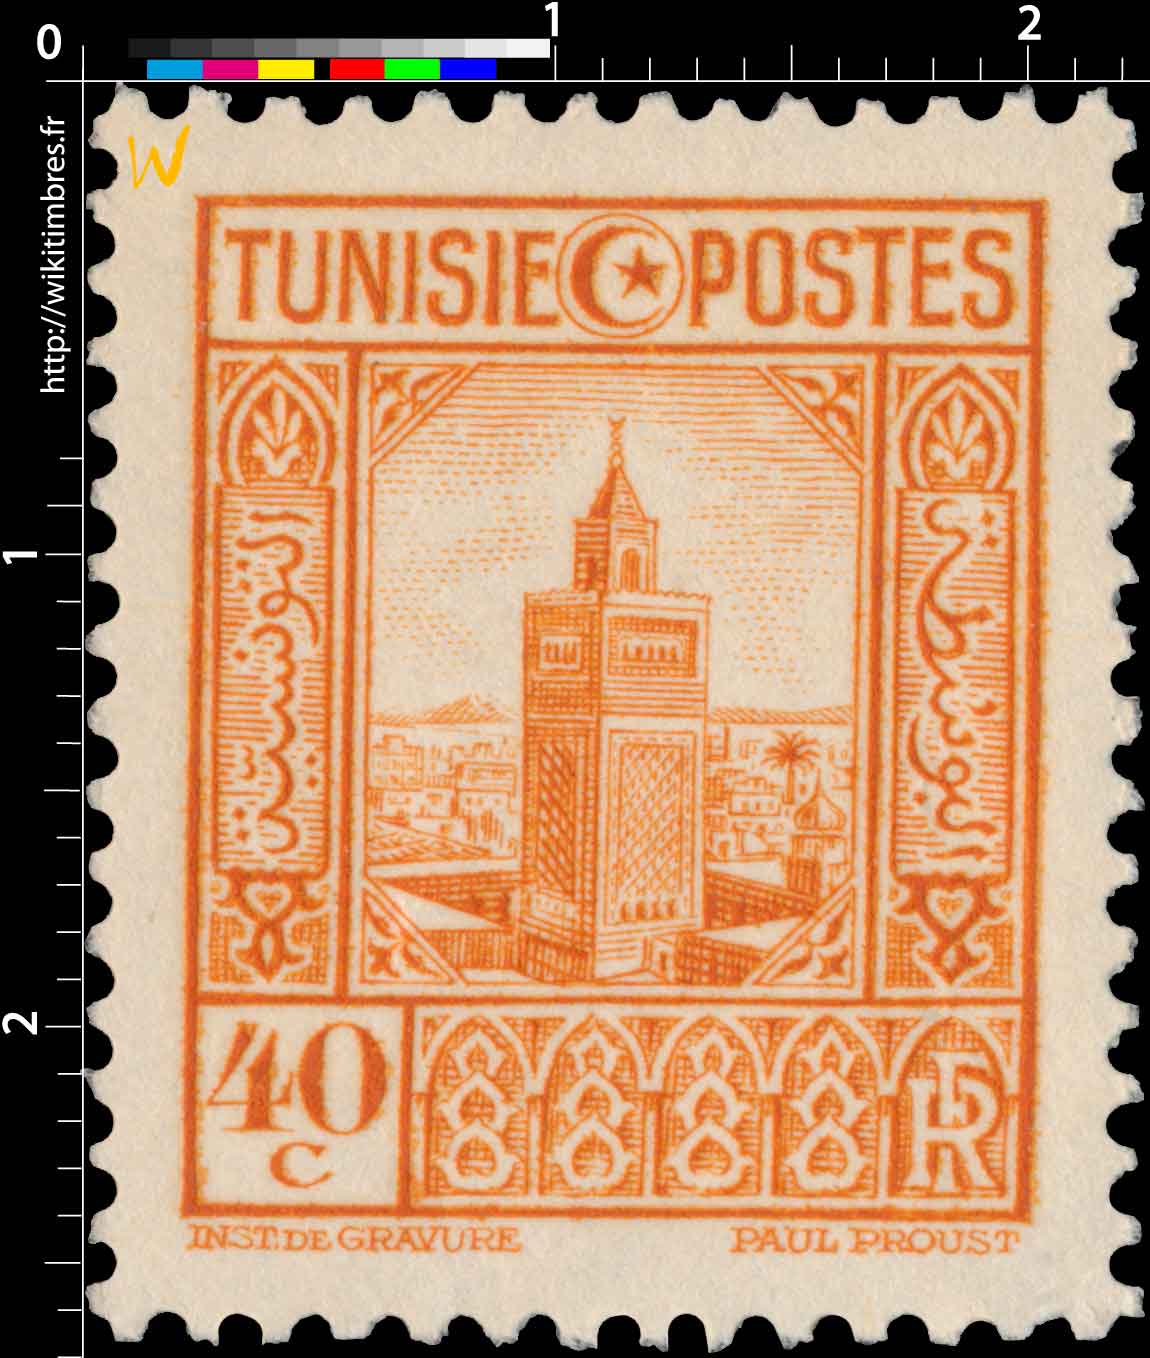 Tunisie - Grande mosquée de Tunis